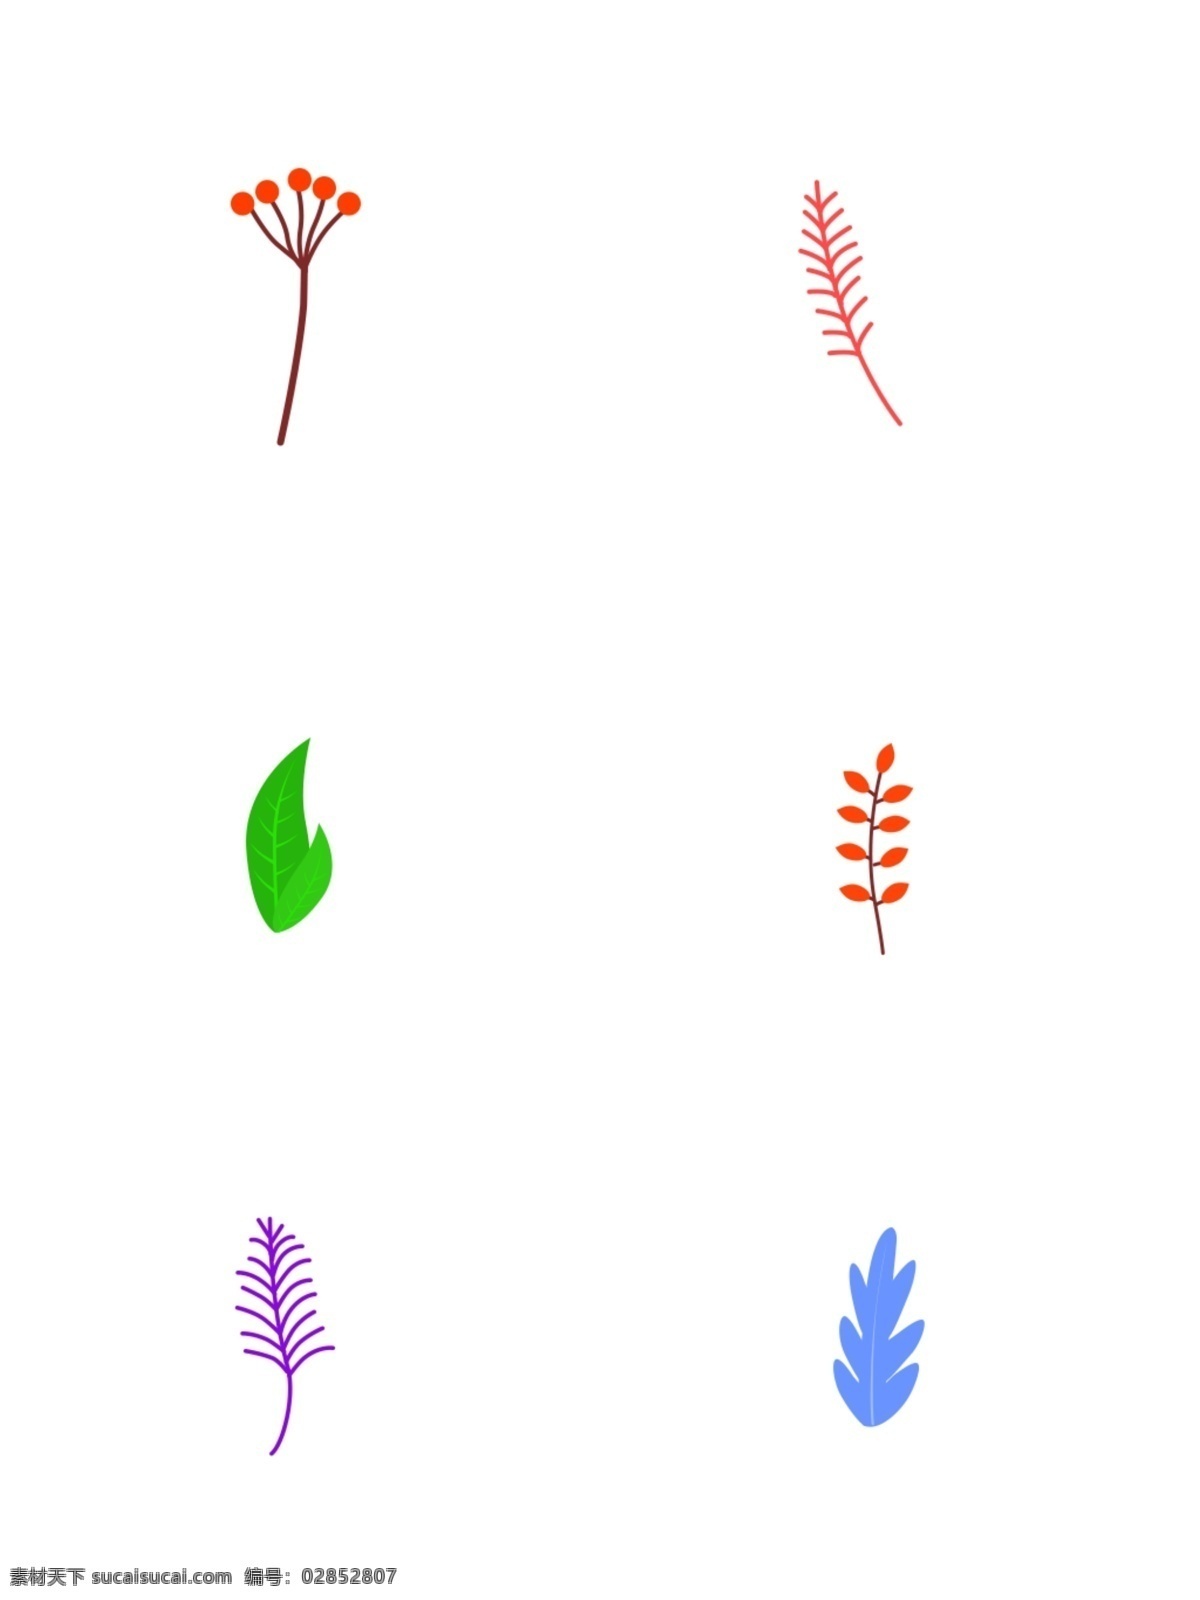 原创 果实 绿叶 植物 树枝 树叶 点缀 元素 手绘 插画 叶子 手绘植物 绿草 扁平设计风格 植物点缀元素 松树枝